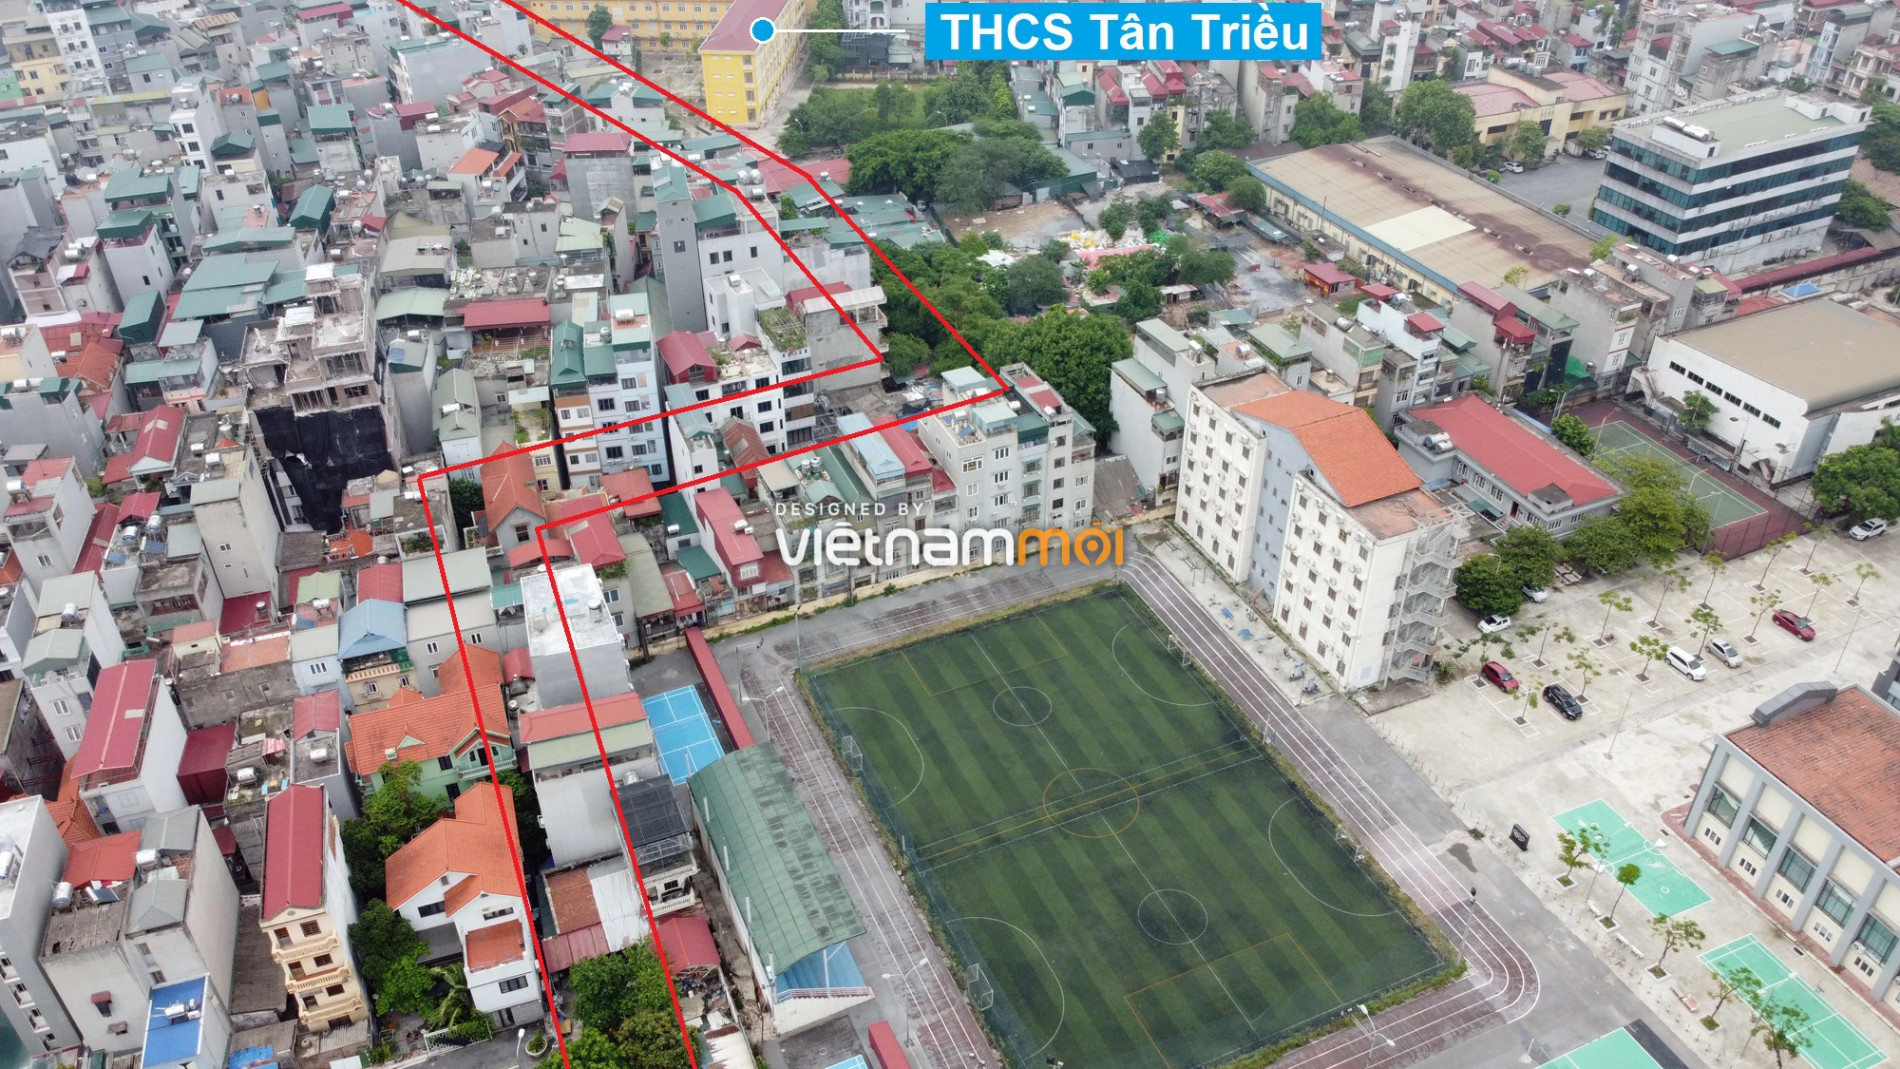 Những khu đất sắp thu hồi để mở đường ở xã Tân Triều, Thanh Trì, Hà Nội (phần 10) - Ảnh 5.